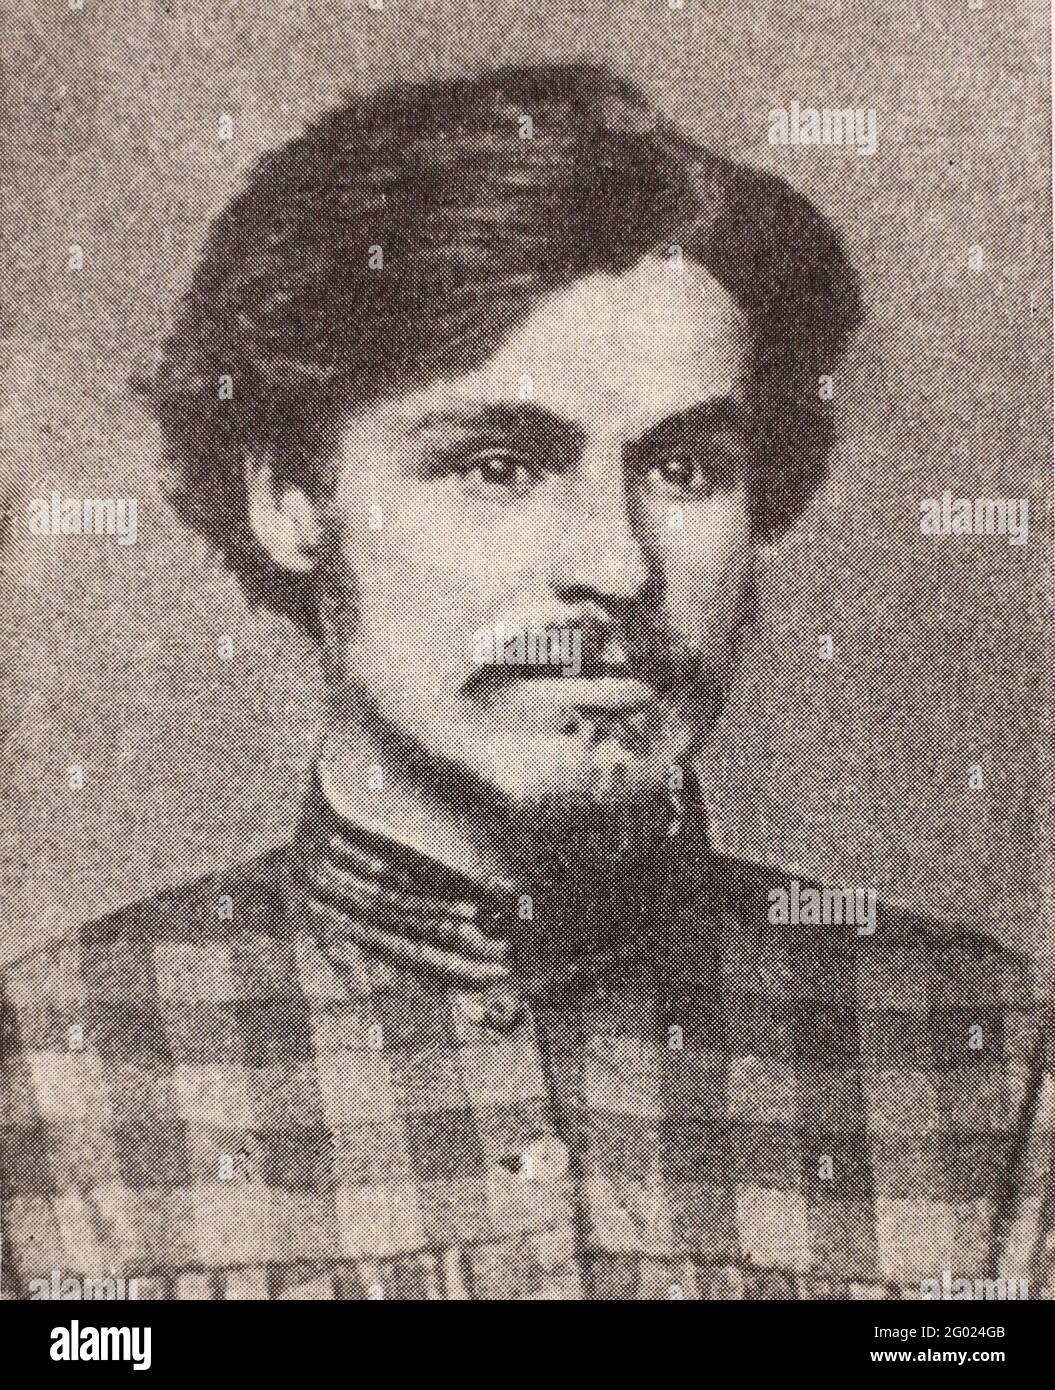 Stepan Nikolayevitch Khalturin était un révolutionnaire russe, membre de Narodnaya Volya, et responsable d'une tentative d'assassinat d'Alexandre II de Russie. Banque D'Images